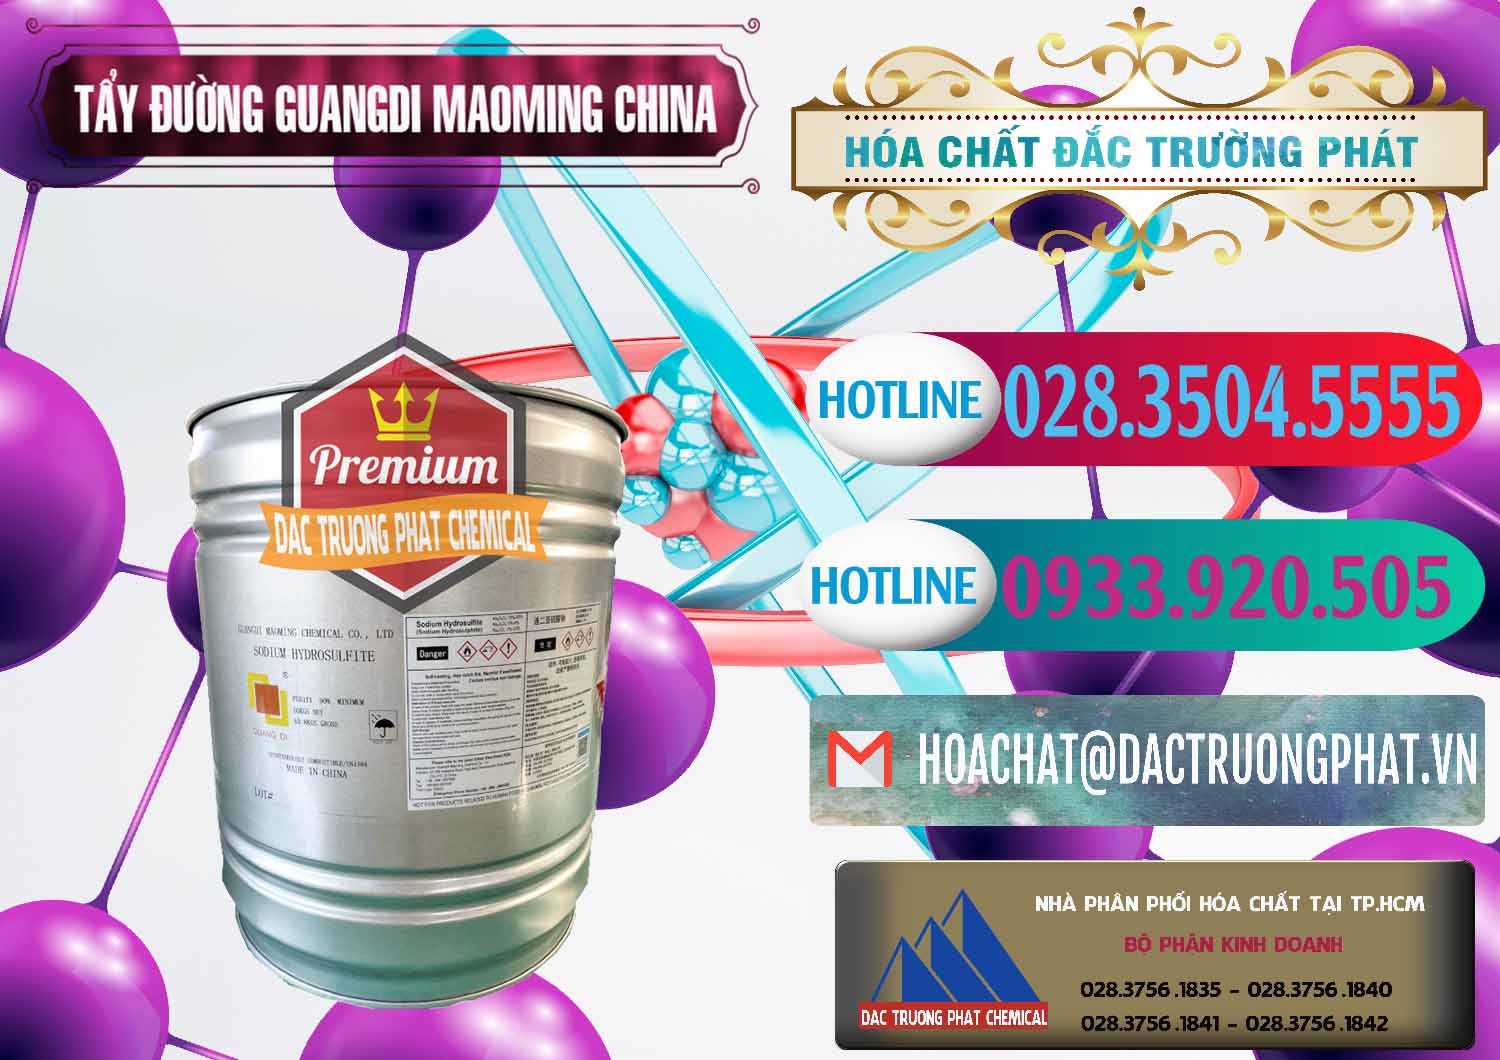 Cty chuyên nhập khẩu _ bán Tẩy Đường - NA2S2O4 Guangdi Maoming Thùng Xám Trung Quốc China - 0402 - Công ty kinh doanh ( cung cấp ) hóa chất tại TP.HCM - truongphat.vn